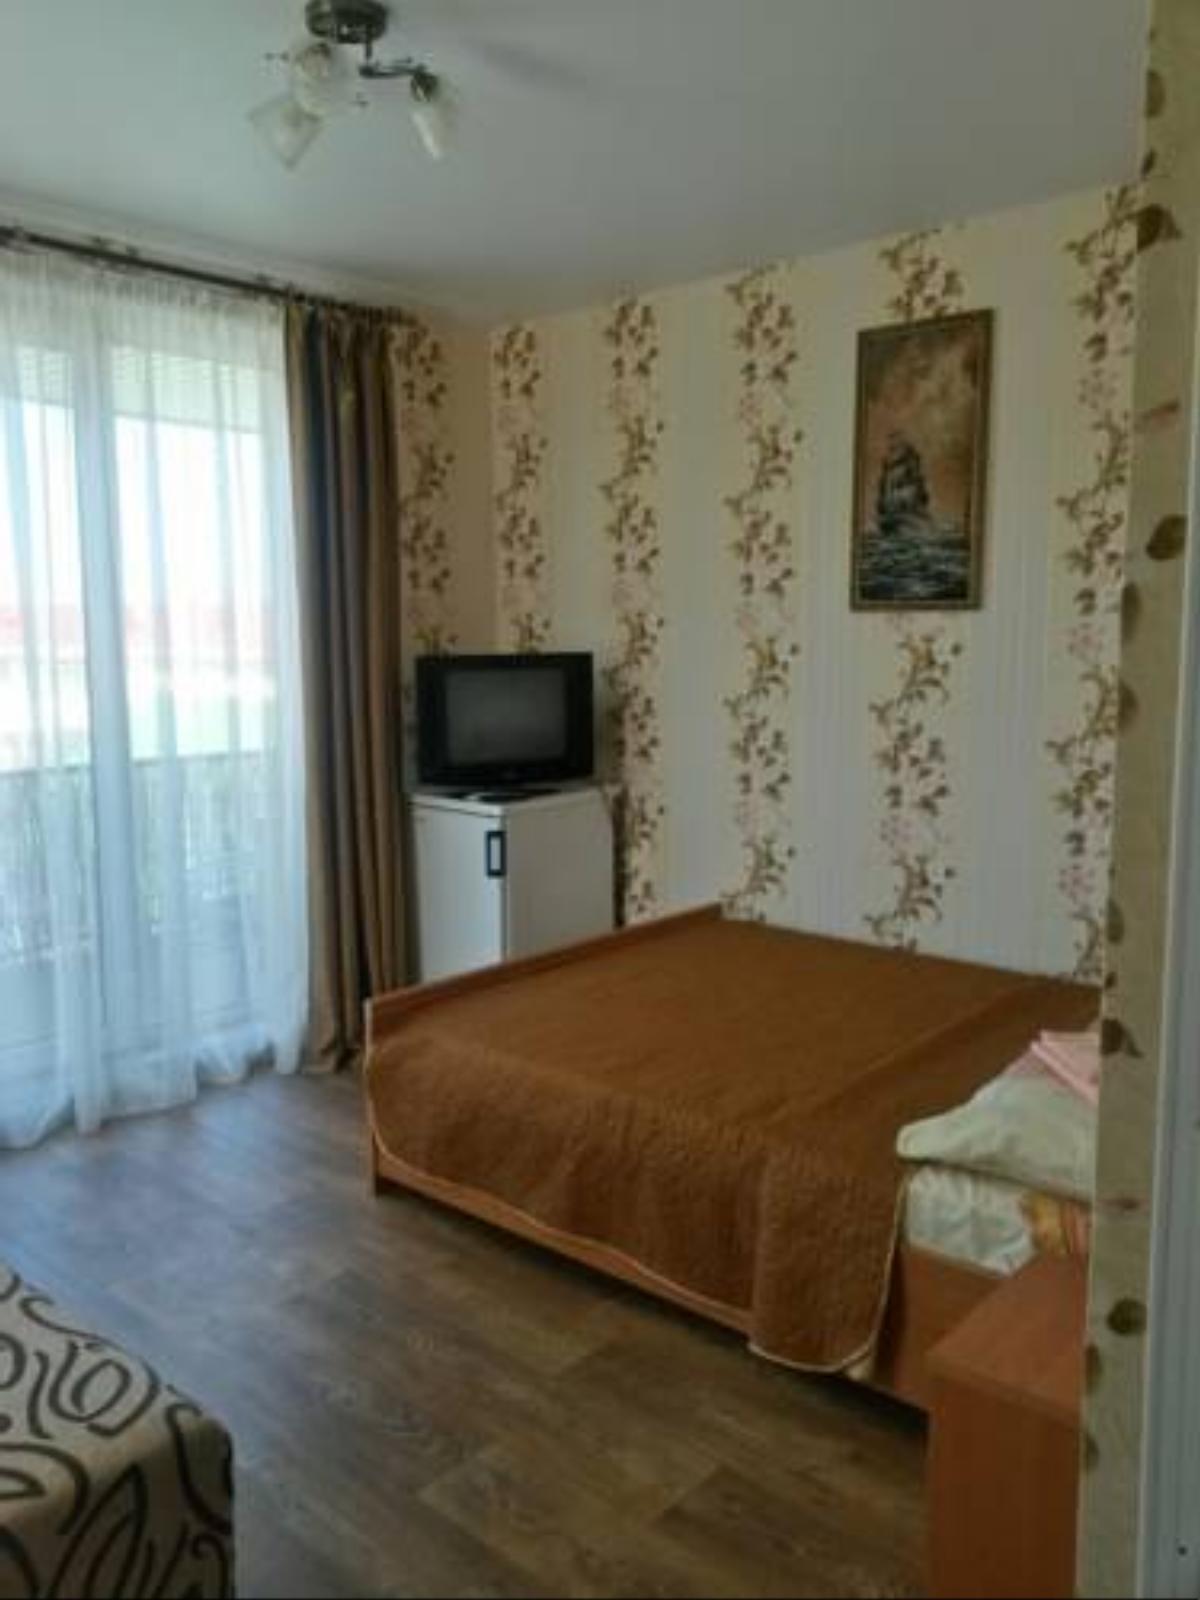 Guest House Antarius Hotel Alushta Crimea